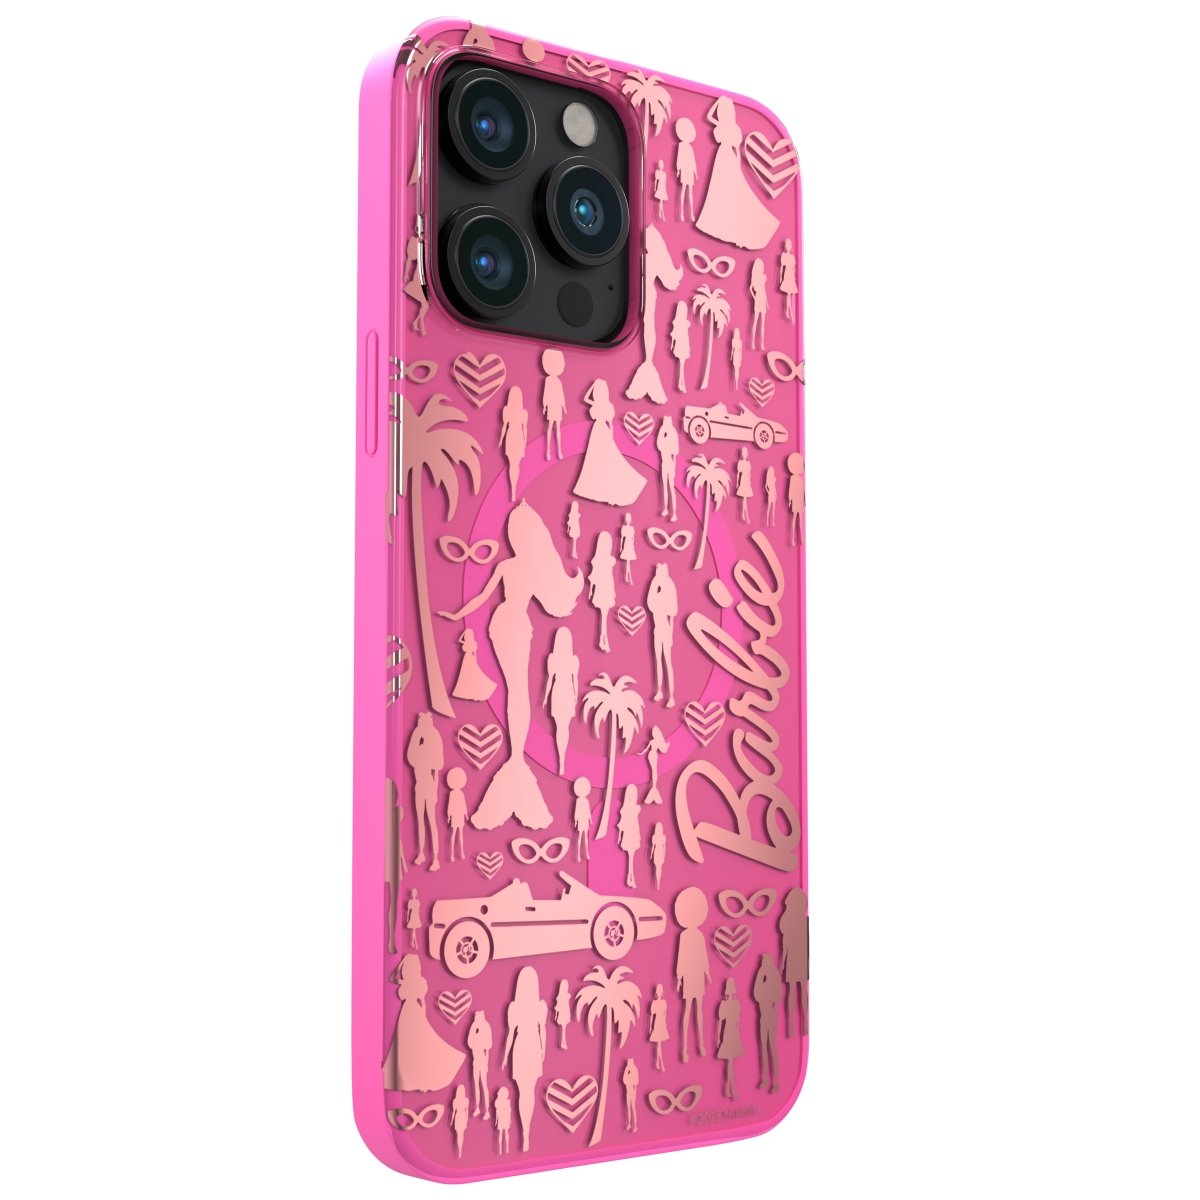 Barbie Phone Case - Gurl Cases